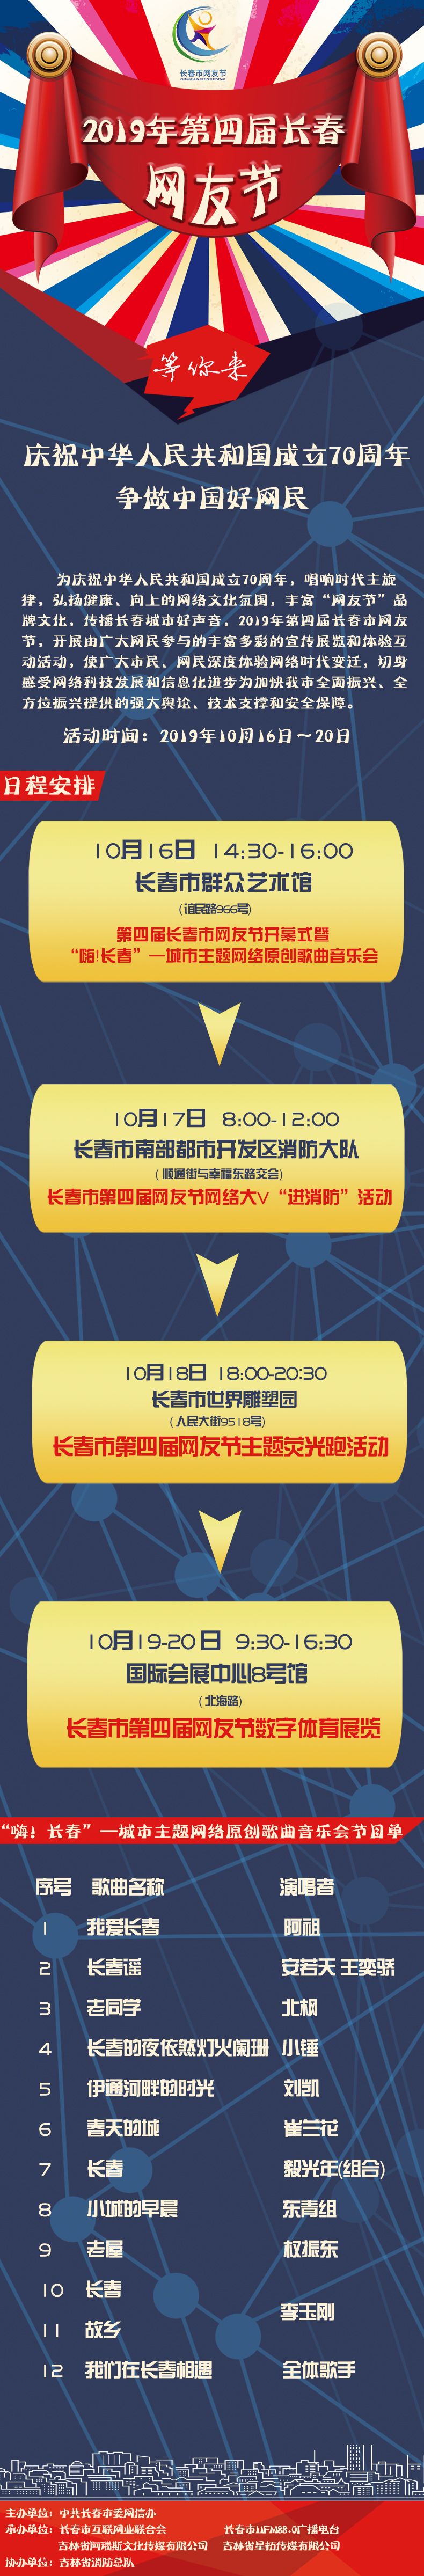 2019年第四届长春市网友节将于10月16日开幕